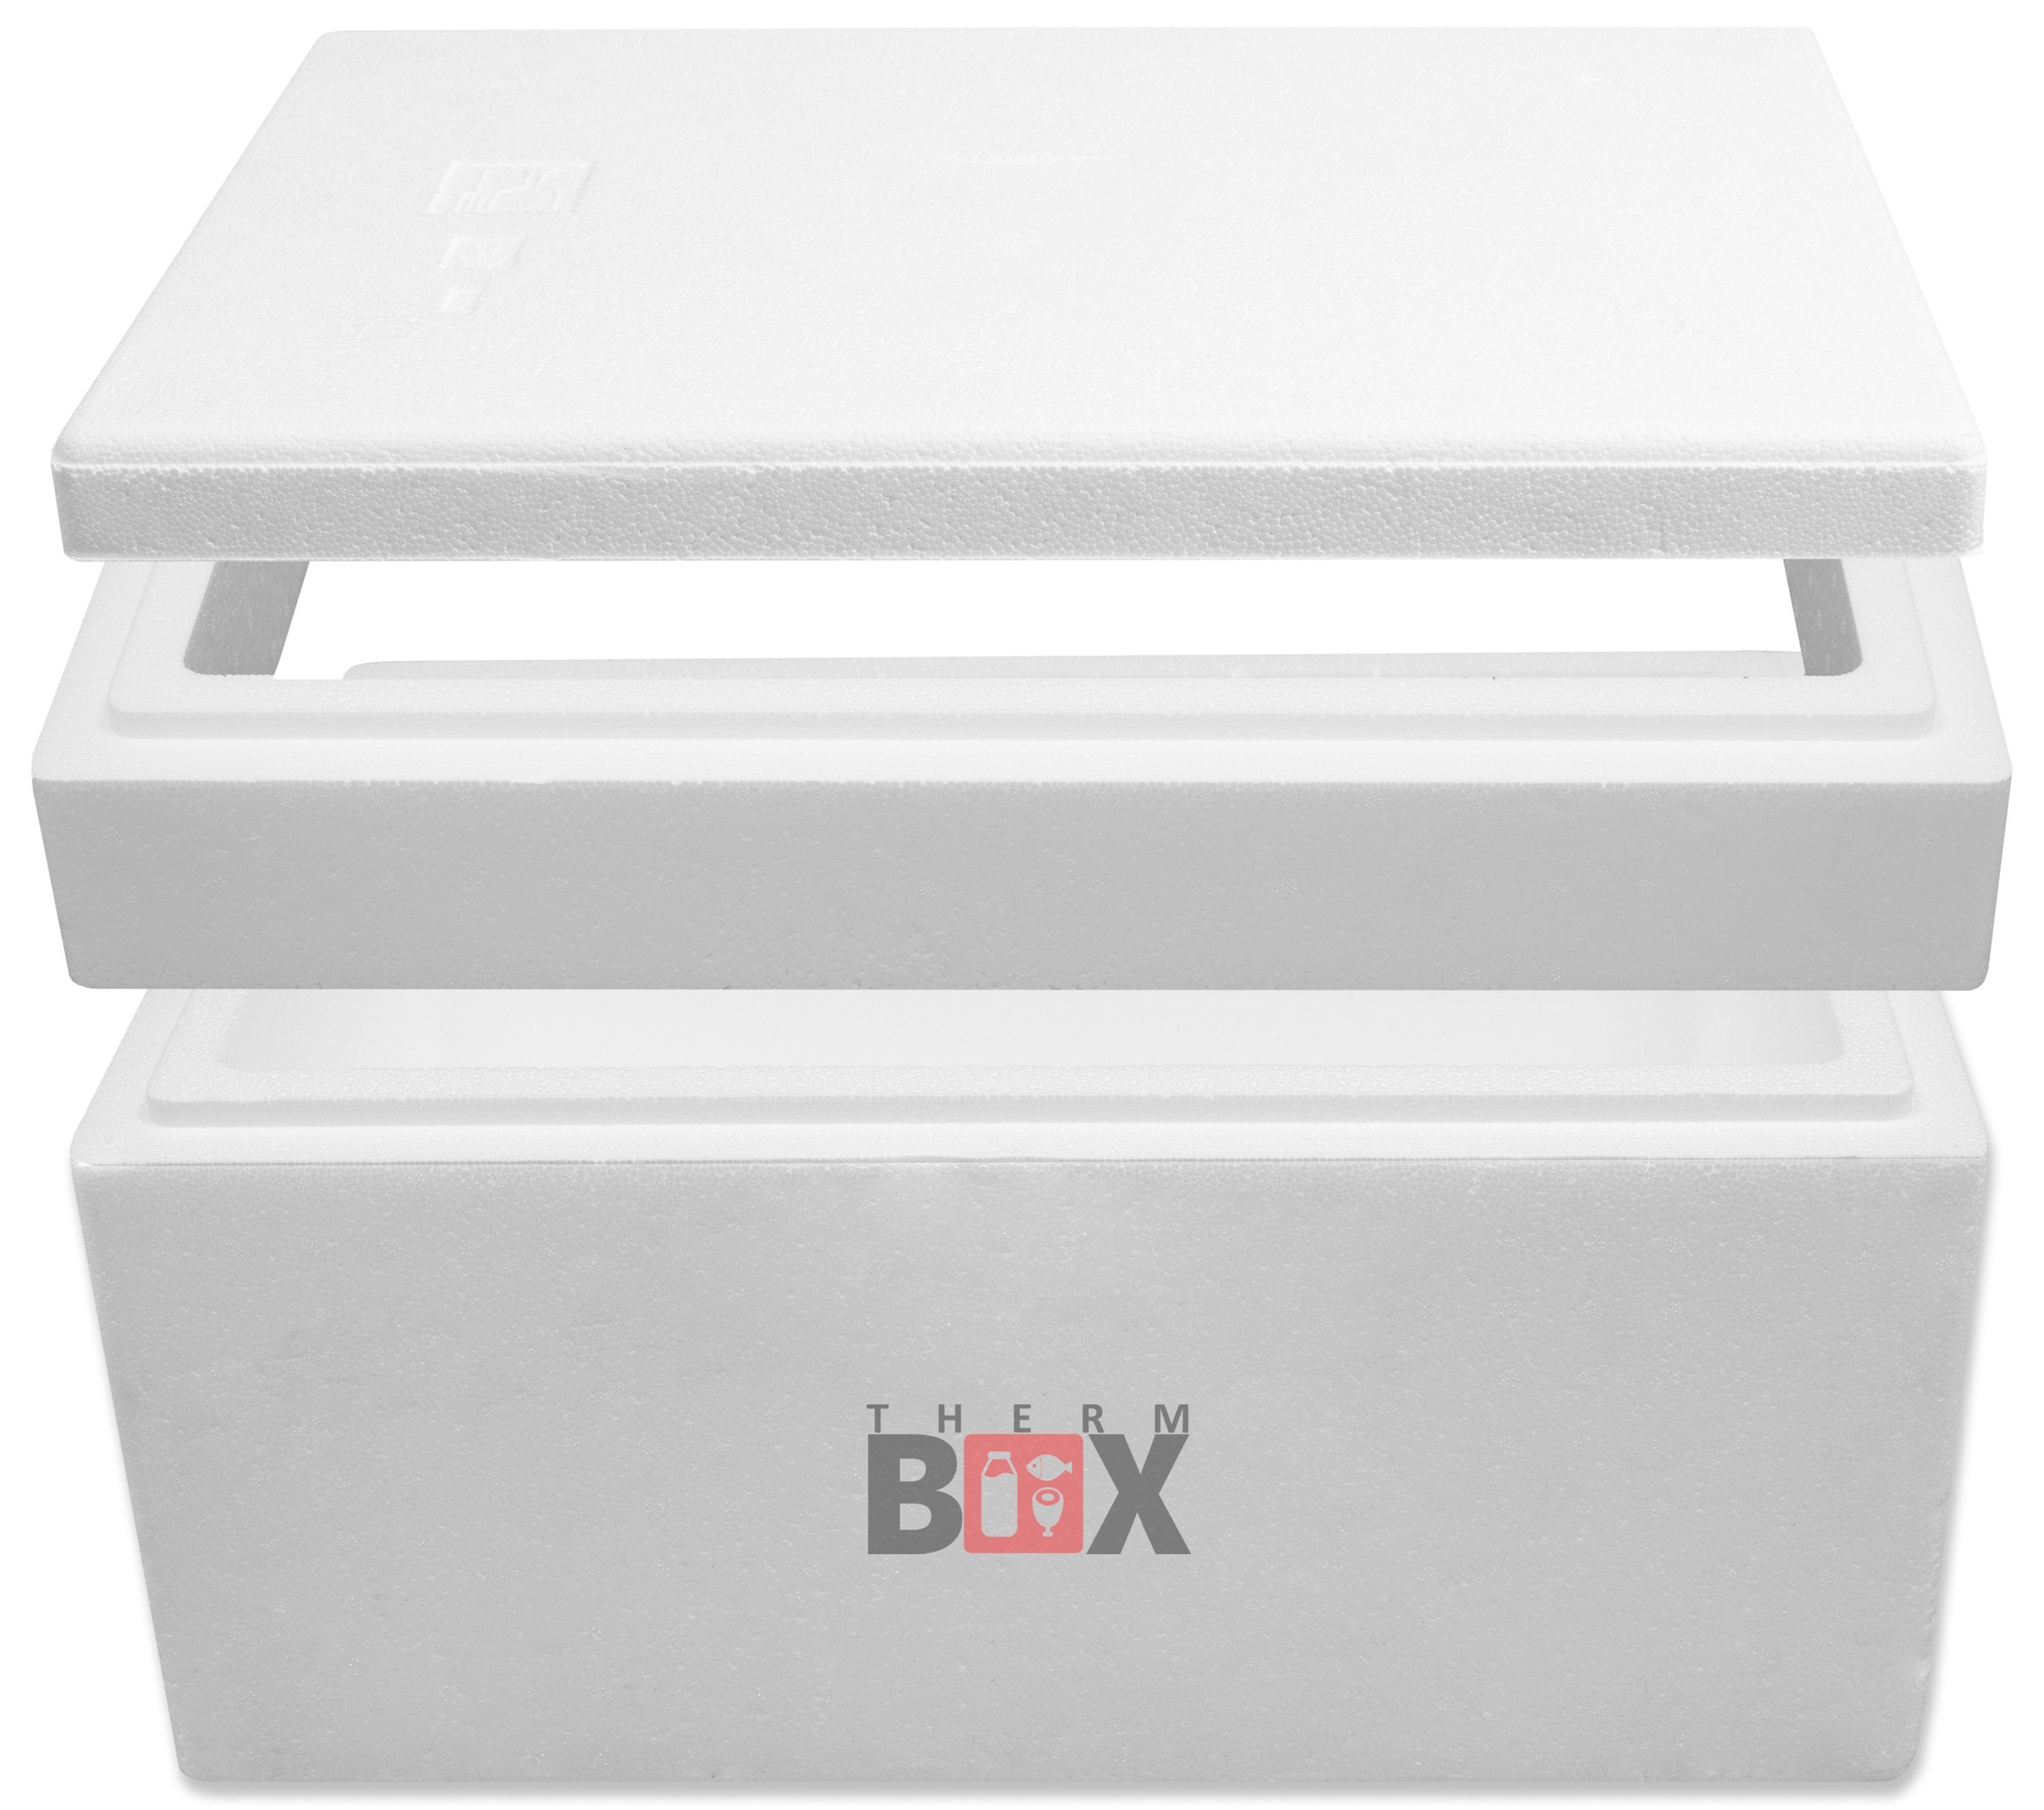 Innenmaß:49x30x28cm Kühlbox Wiederverwendbar, THERM-BOX mit Karton), Thermobehälter im 43M (0-tlg., Modularbox cm 43L Thermobox 4,0 Zusatzring Styropor-Verdichtet, Deckel & Erweiterbar Box Wand: Warmhaltebox Isolierbox